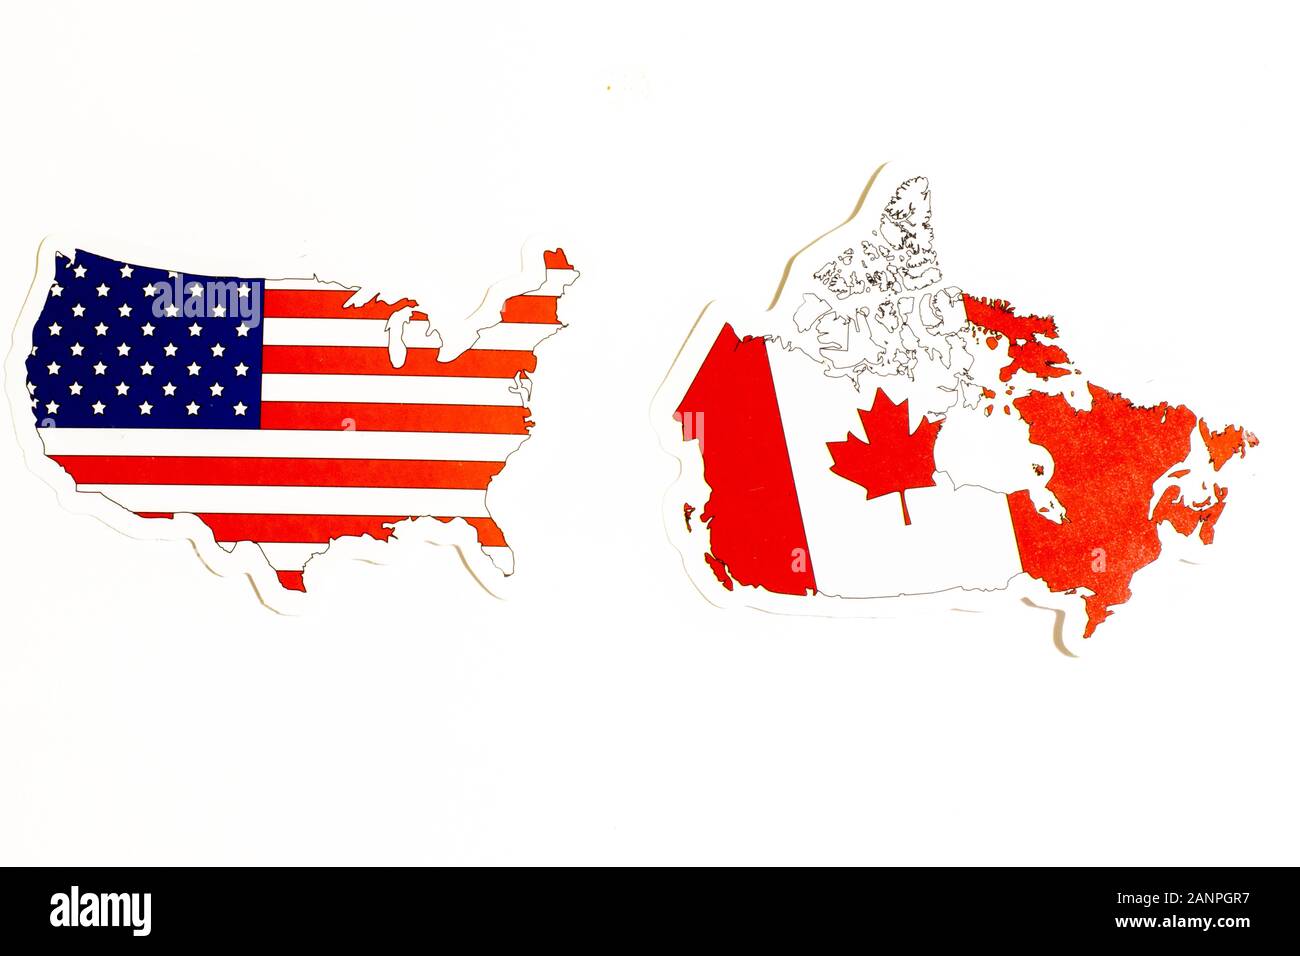 Los Angeles, Californie, États-Unis - 17 janvier 2020: Drapeaux nationaux des États-Unis et du Canada sur fond blanc avec espace de copie, éditorial illustratif Banque D'Images